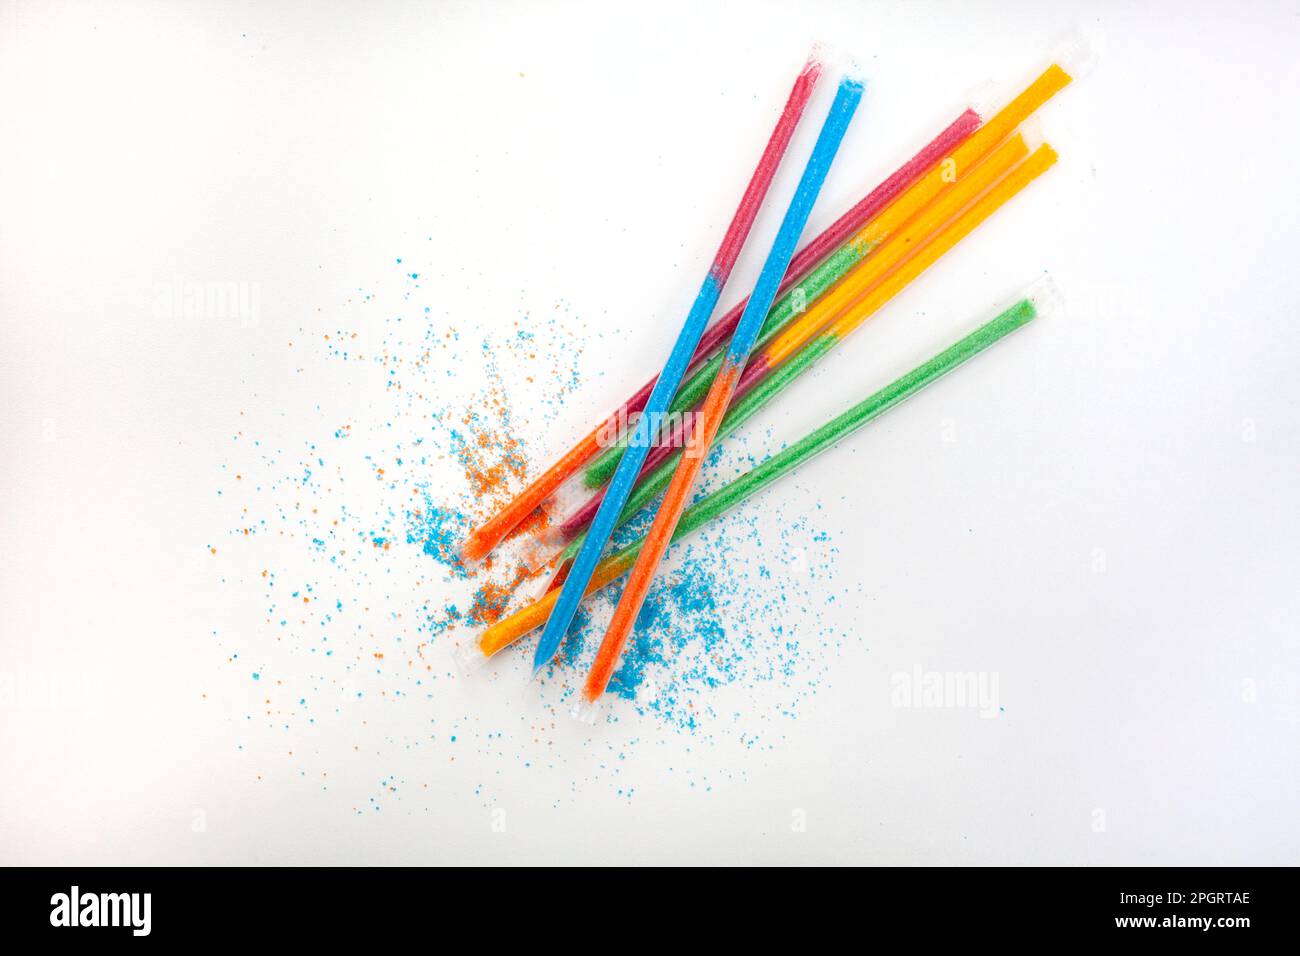 Farbenfrohe Kinder Süßigkeiten-Sorbet gefüllte Strohhalme auf Weiß Stockfoto